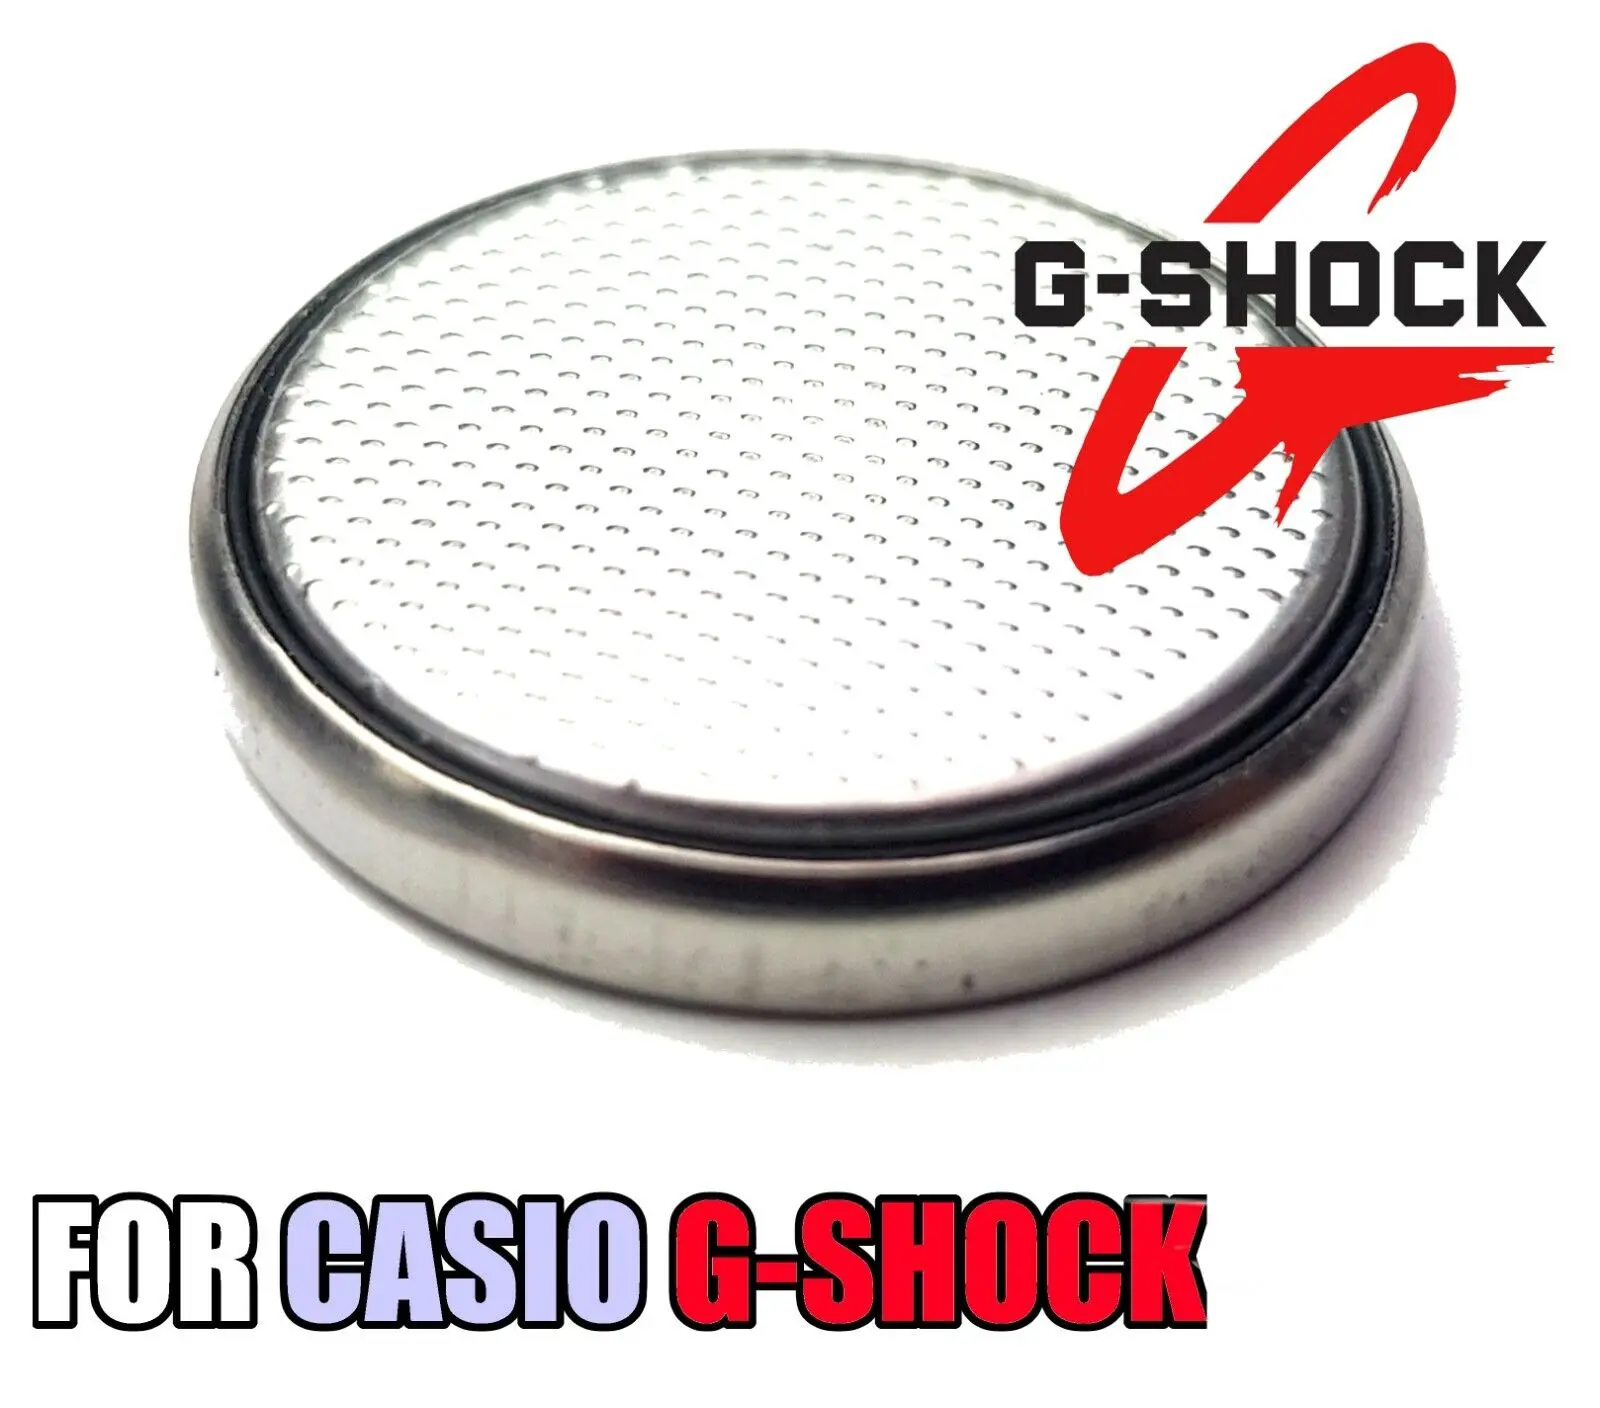 bateria casio g shock - Cómo saber si el reloj Casio G-SHOCK es original